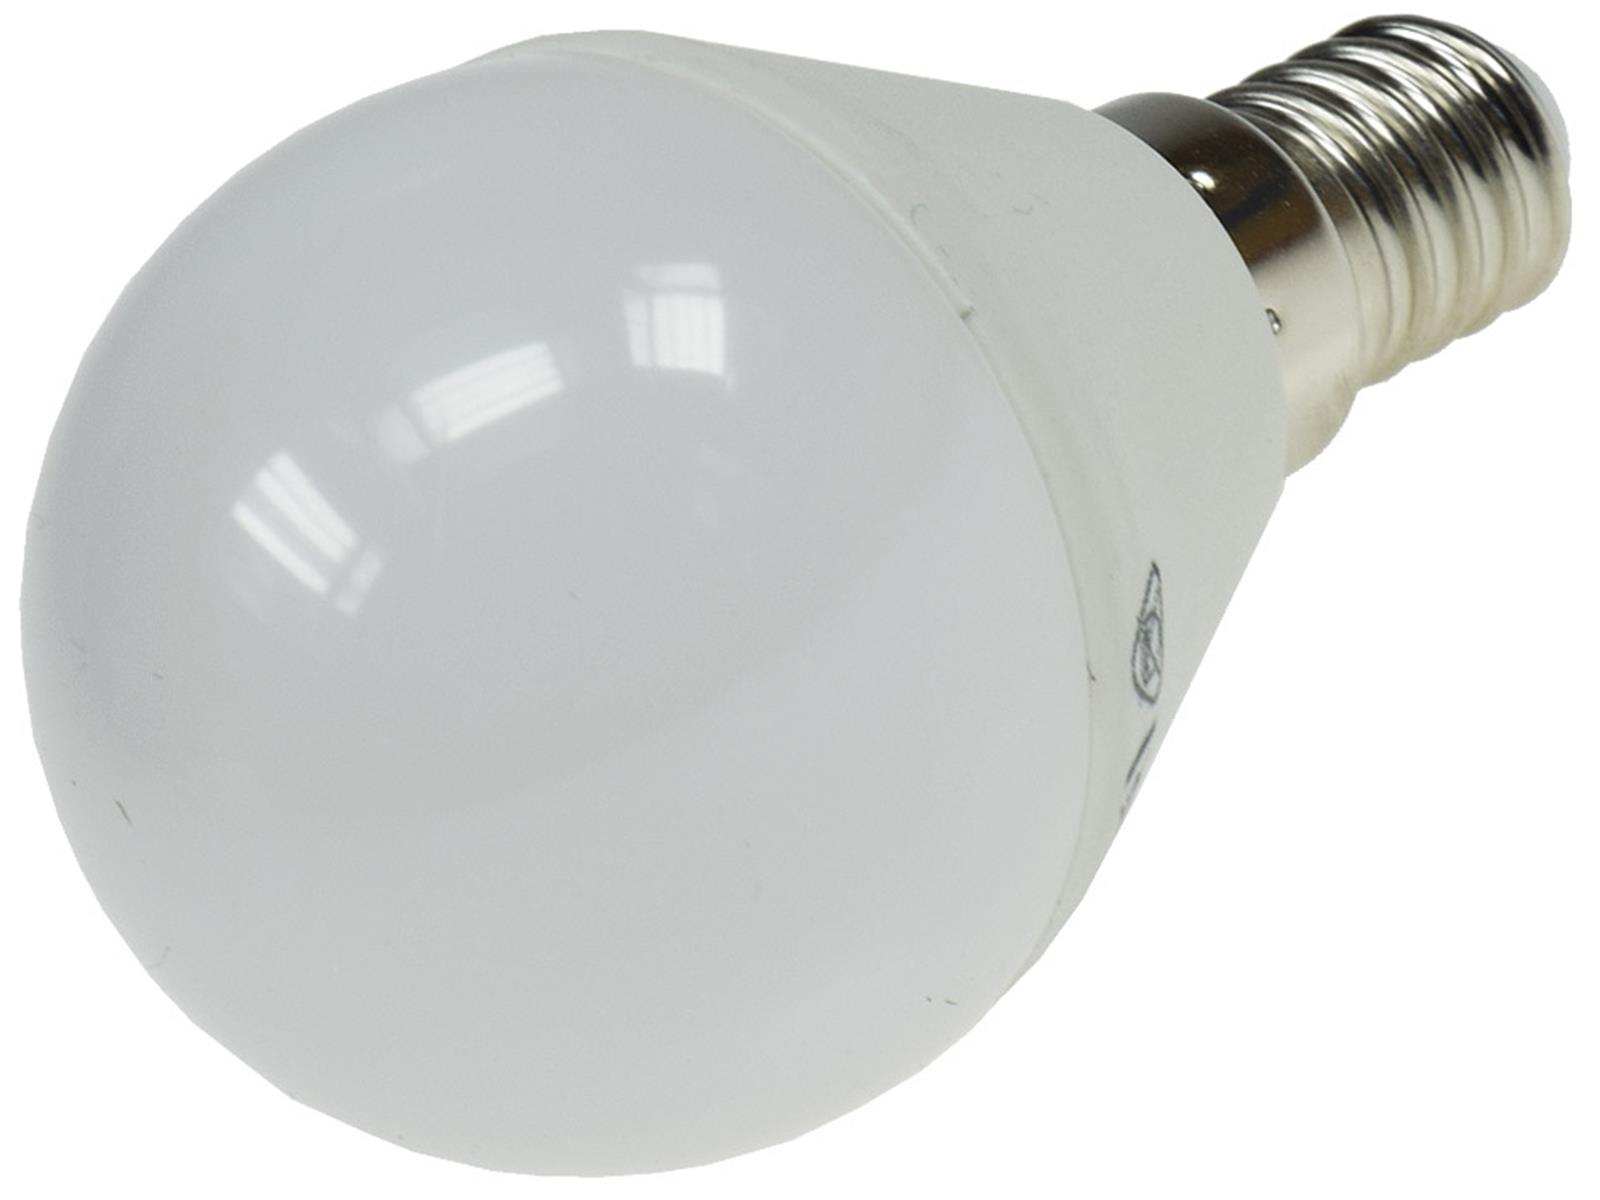 LED Tropfenlampe E14 "T50" warmweiß3000k, 470lm, 230V/5W